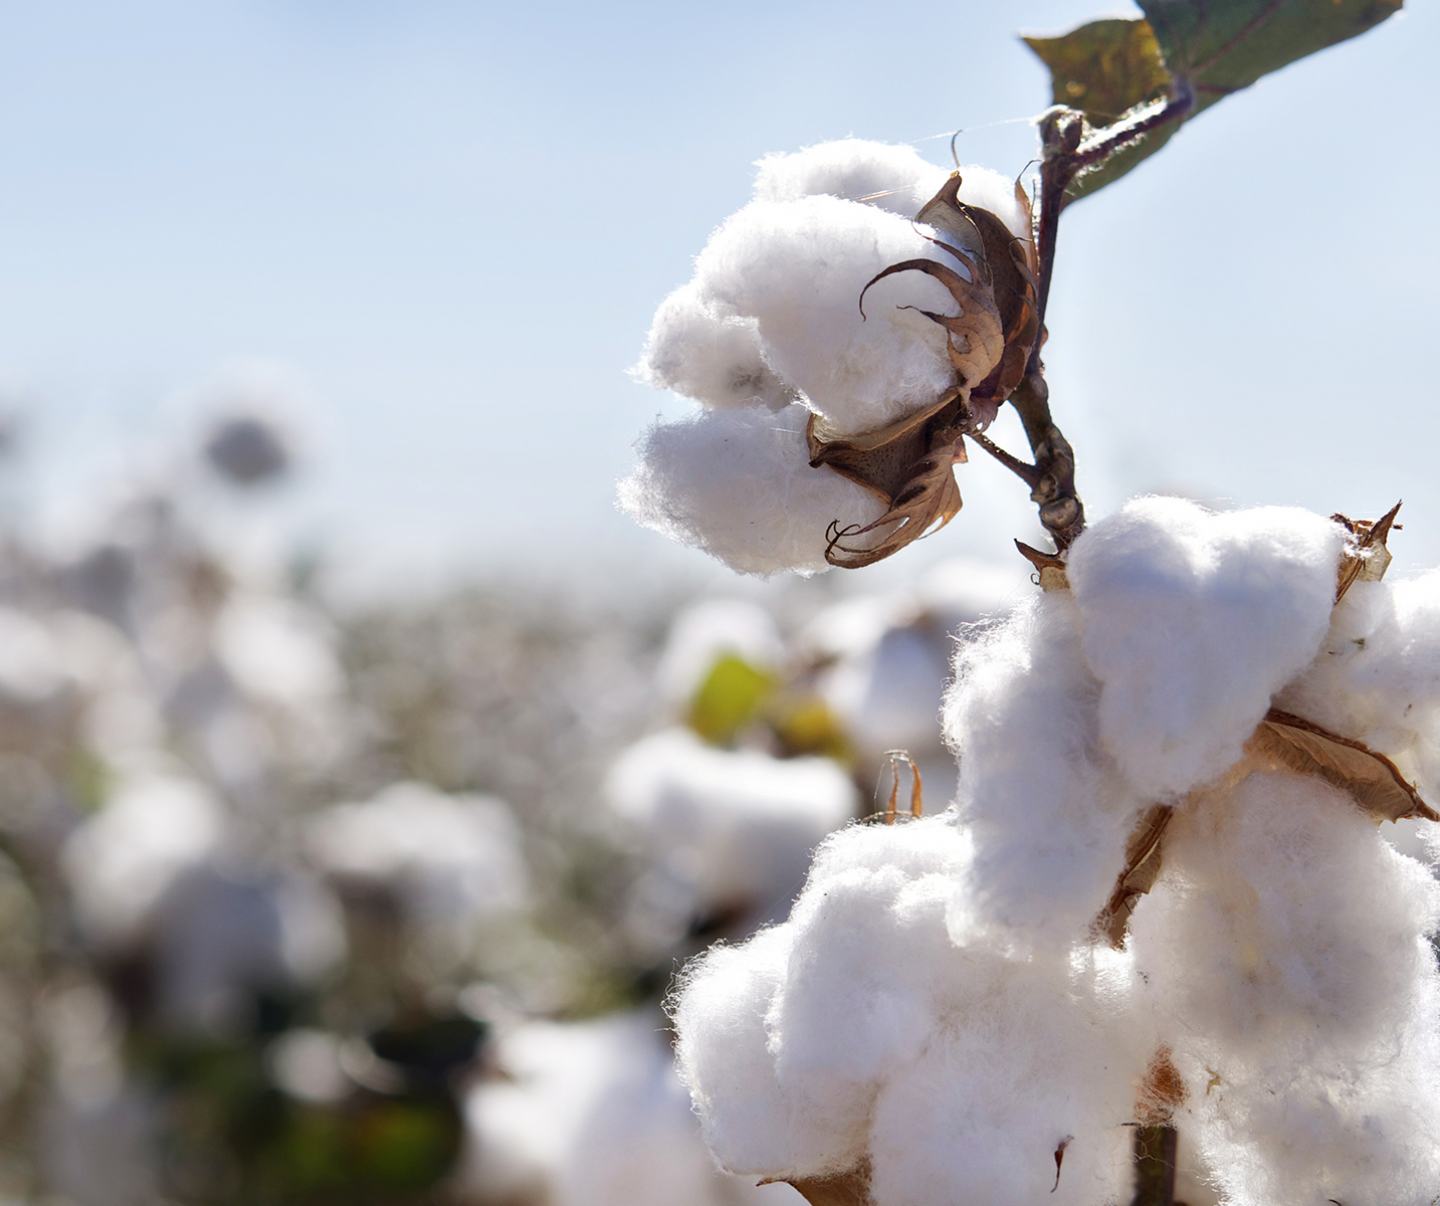 Organic cotton 